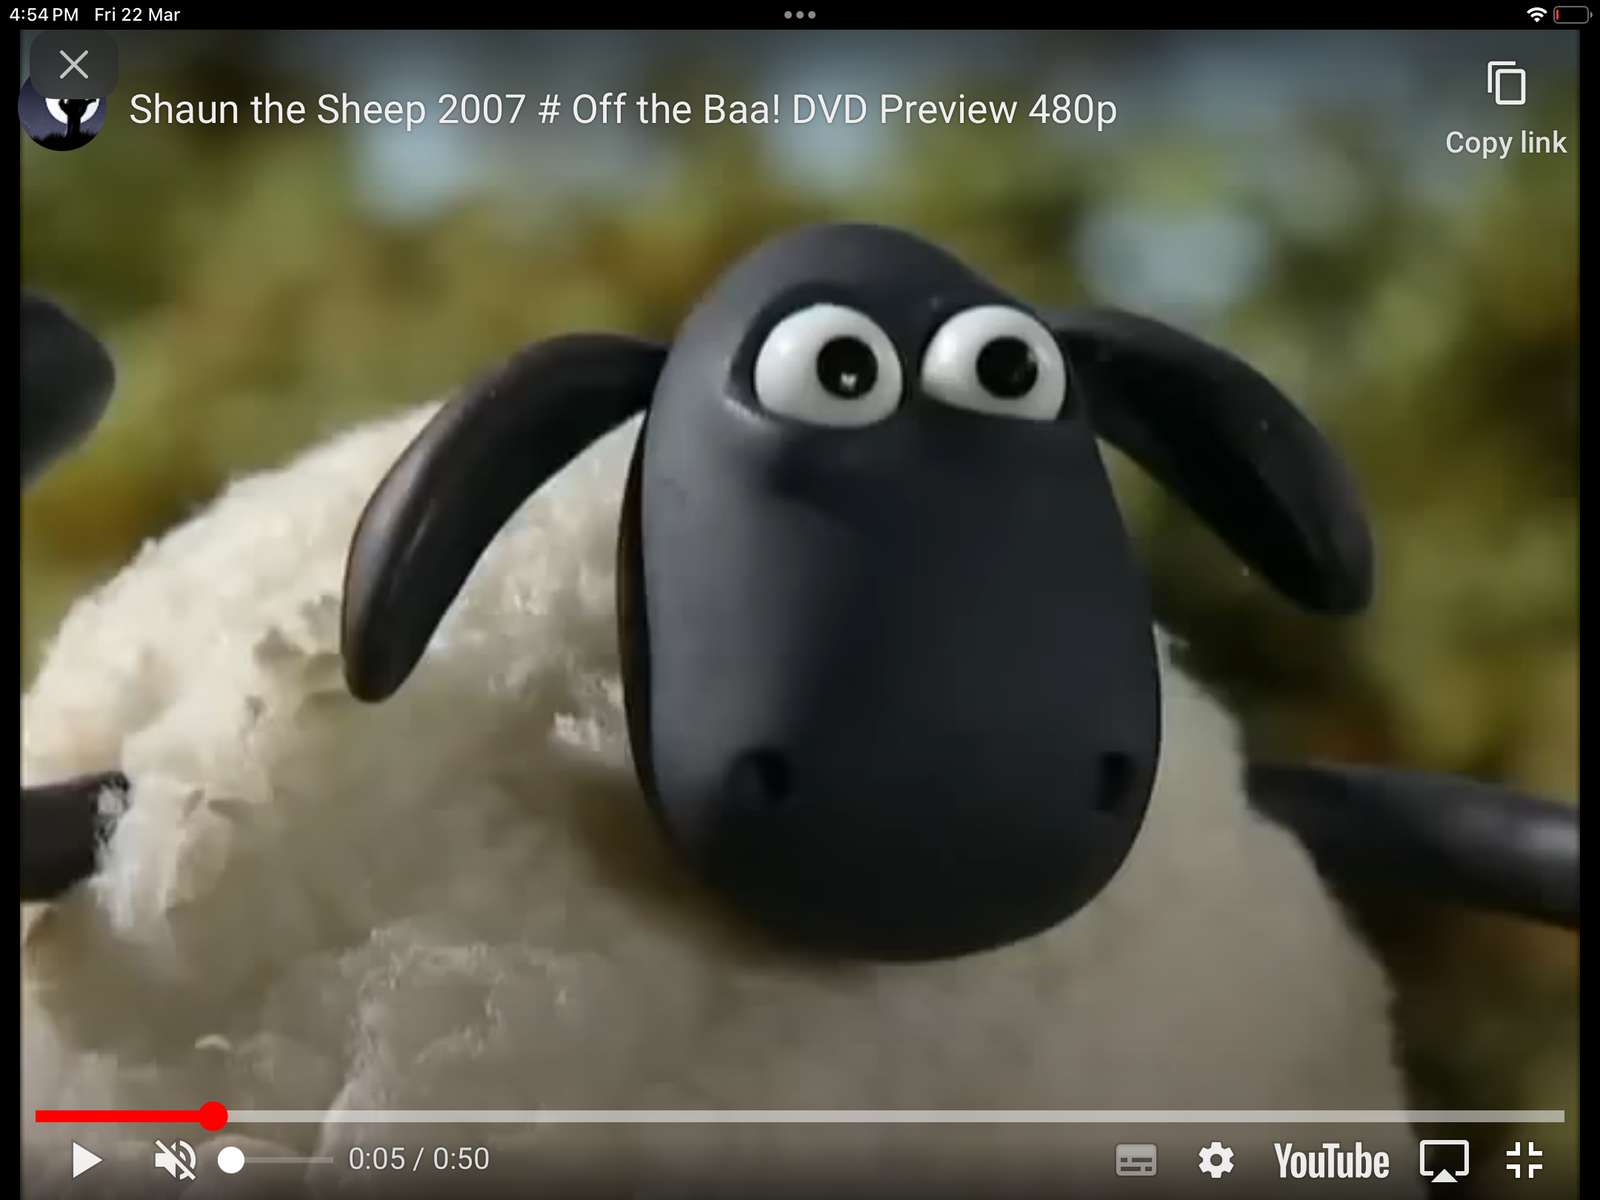 Shaun le mouton de la bande-annonce du DVD Baa puzzle en ligne à partir d'une photo